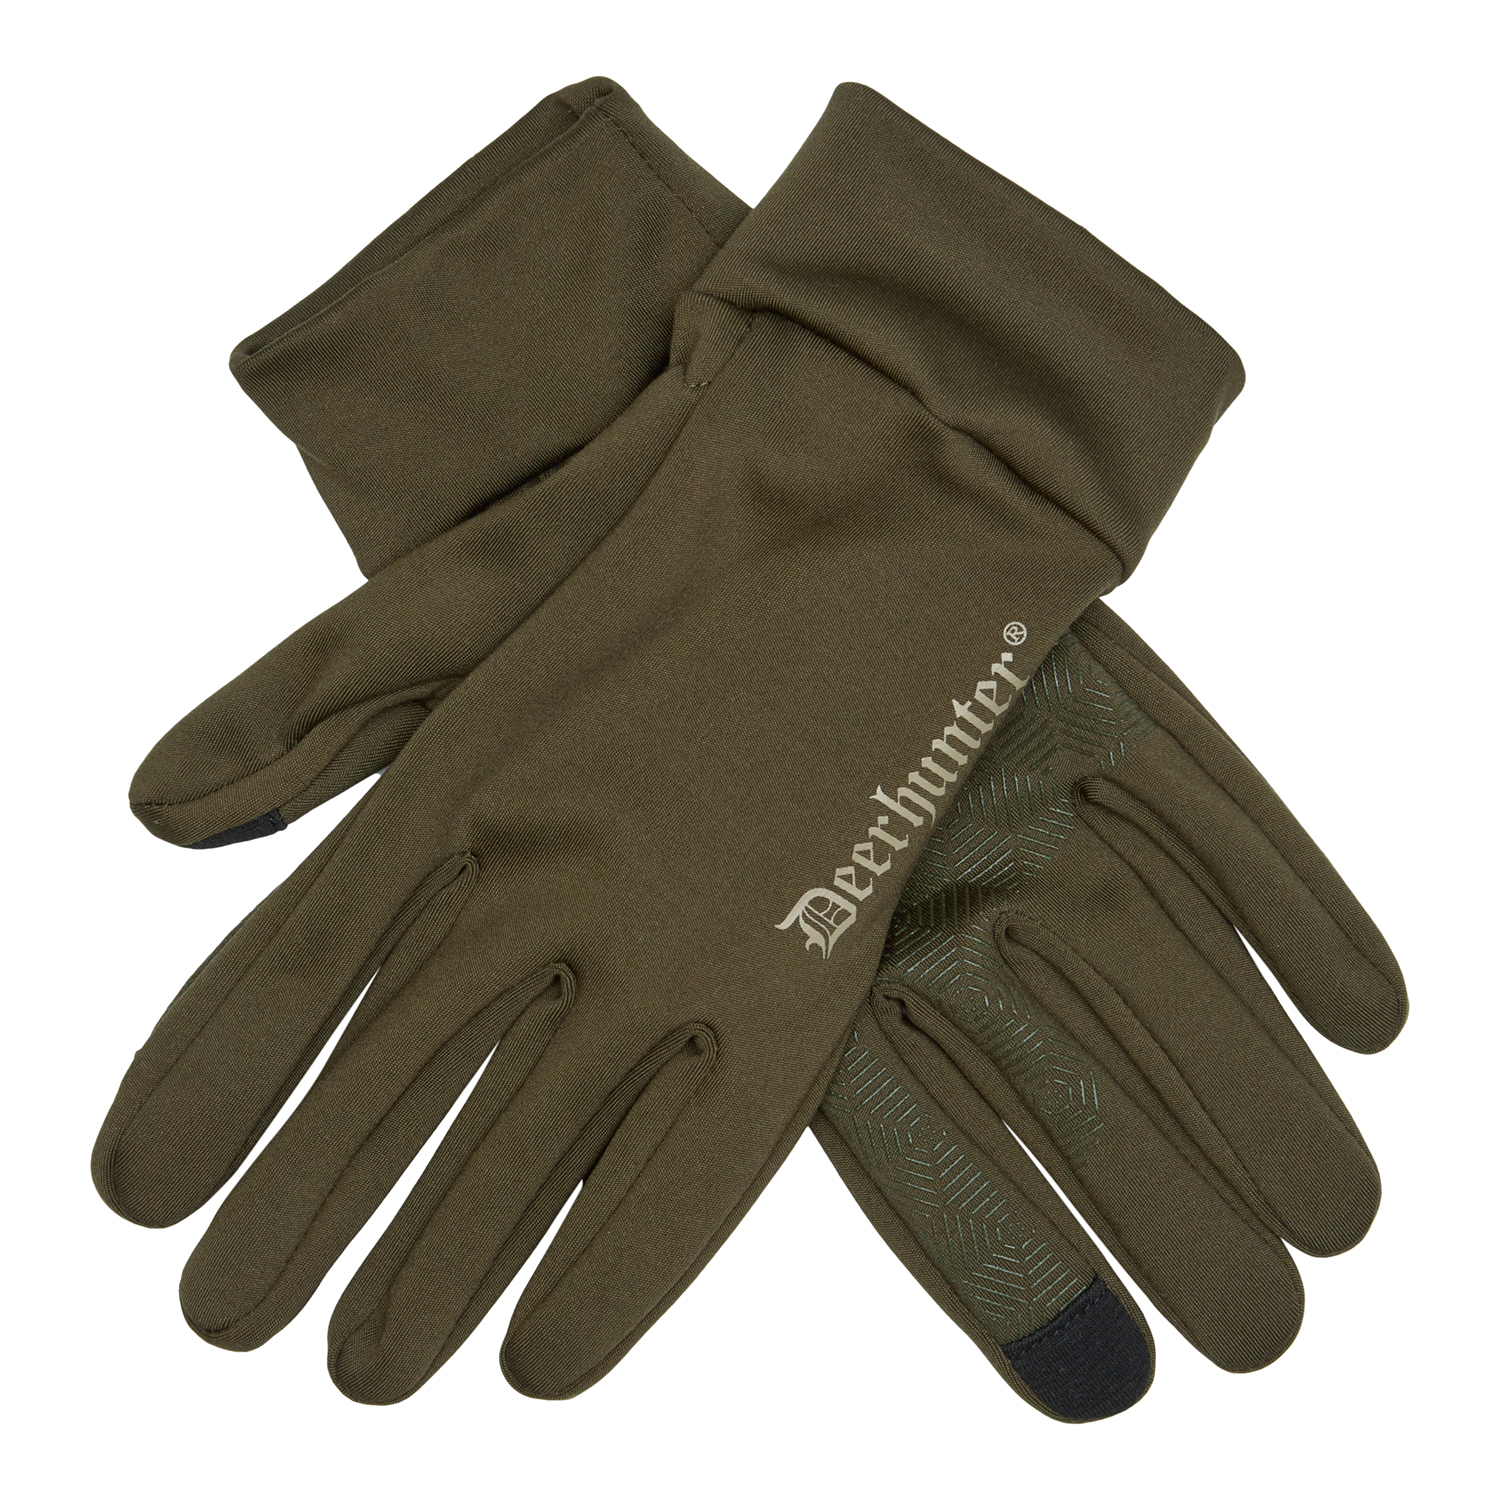 Der Jagdhandschuh Rusky Silent ist ein flexibler und vielseitiger Handschuh. 